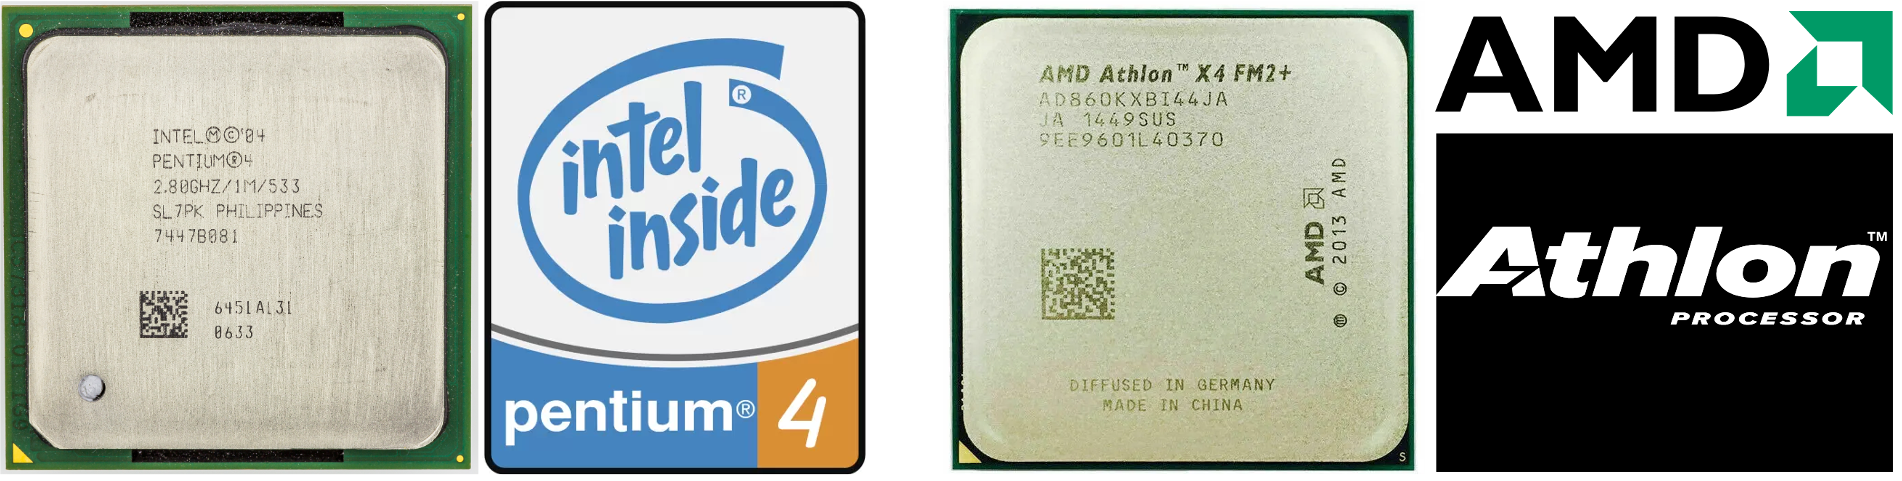 Pentium4 vs AMD